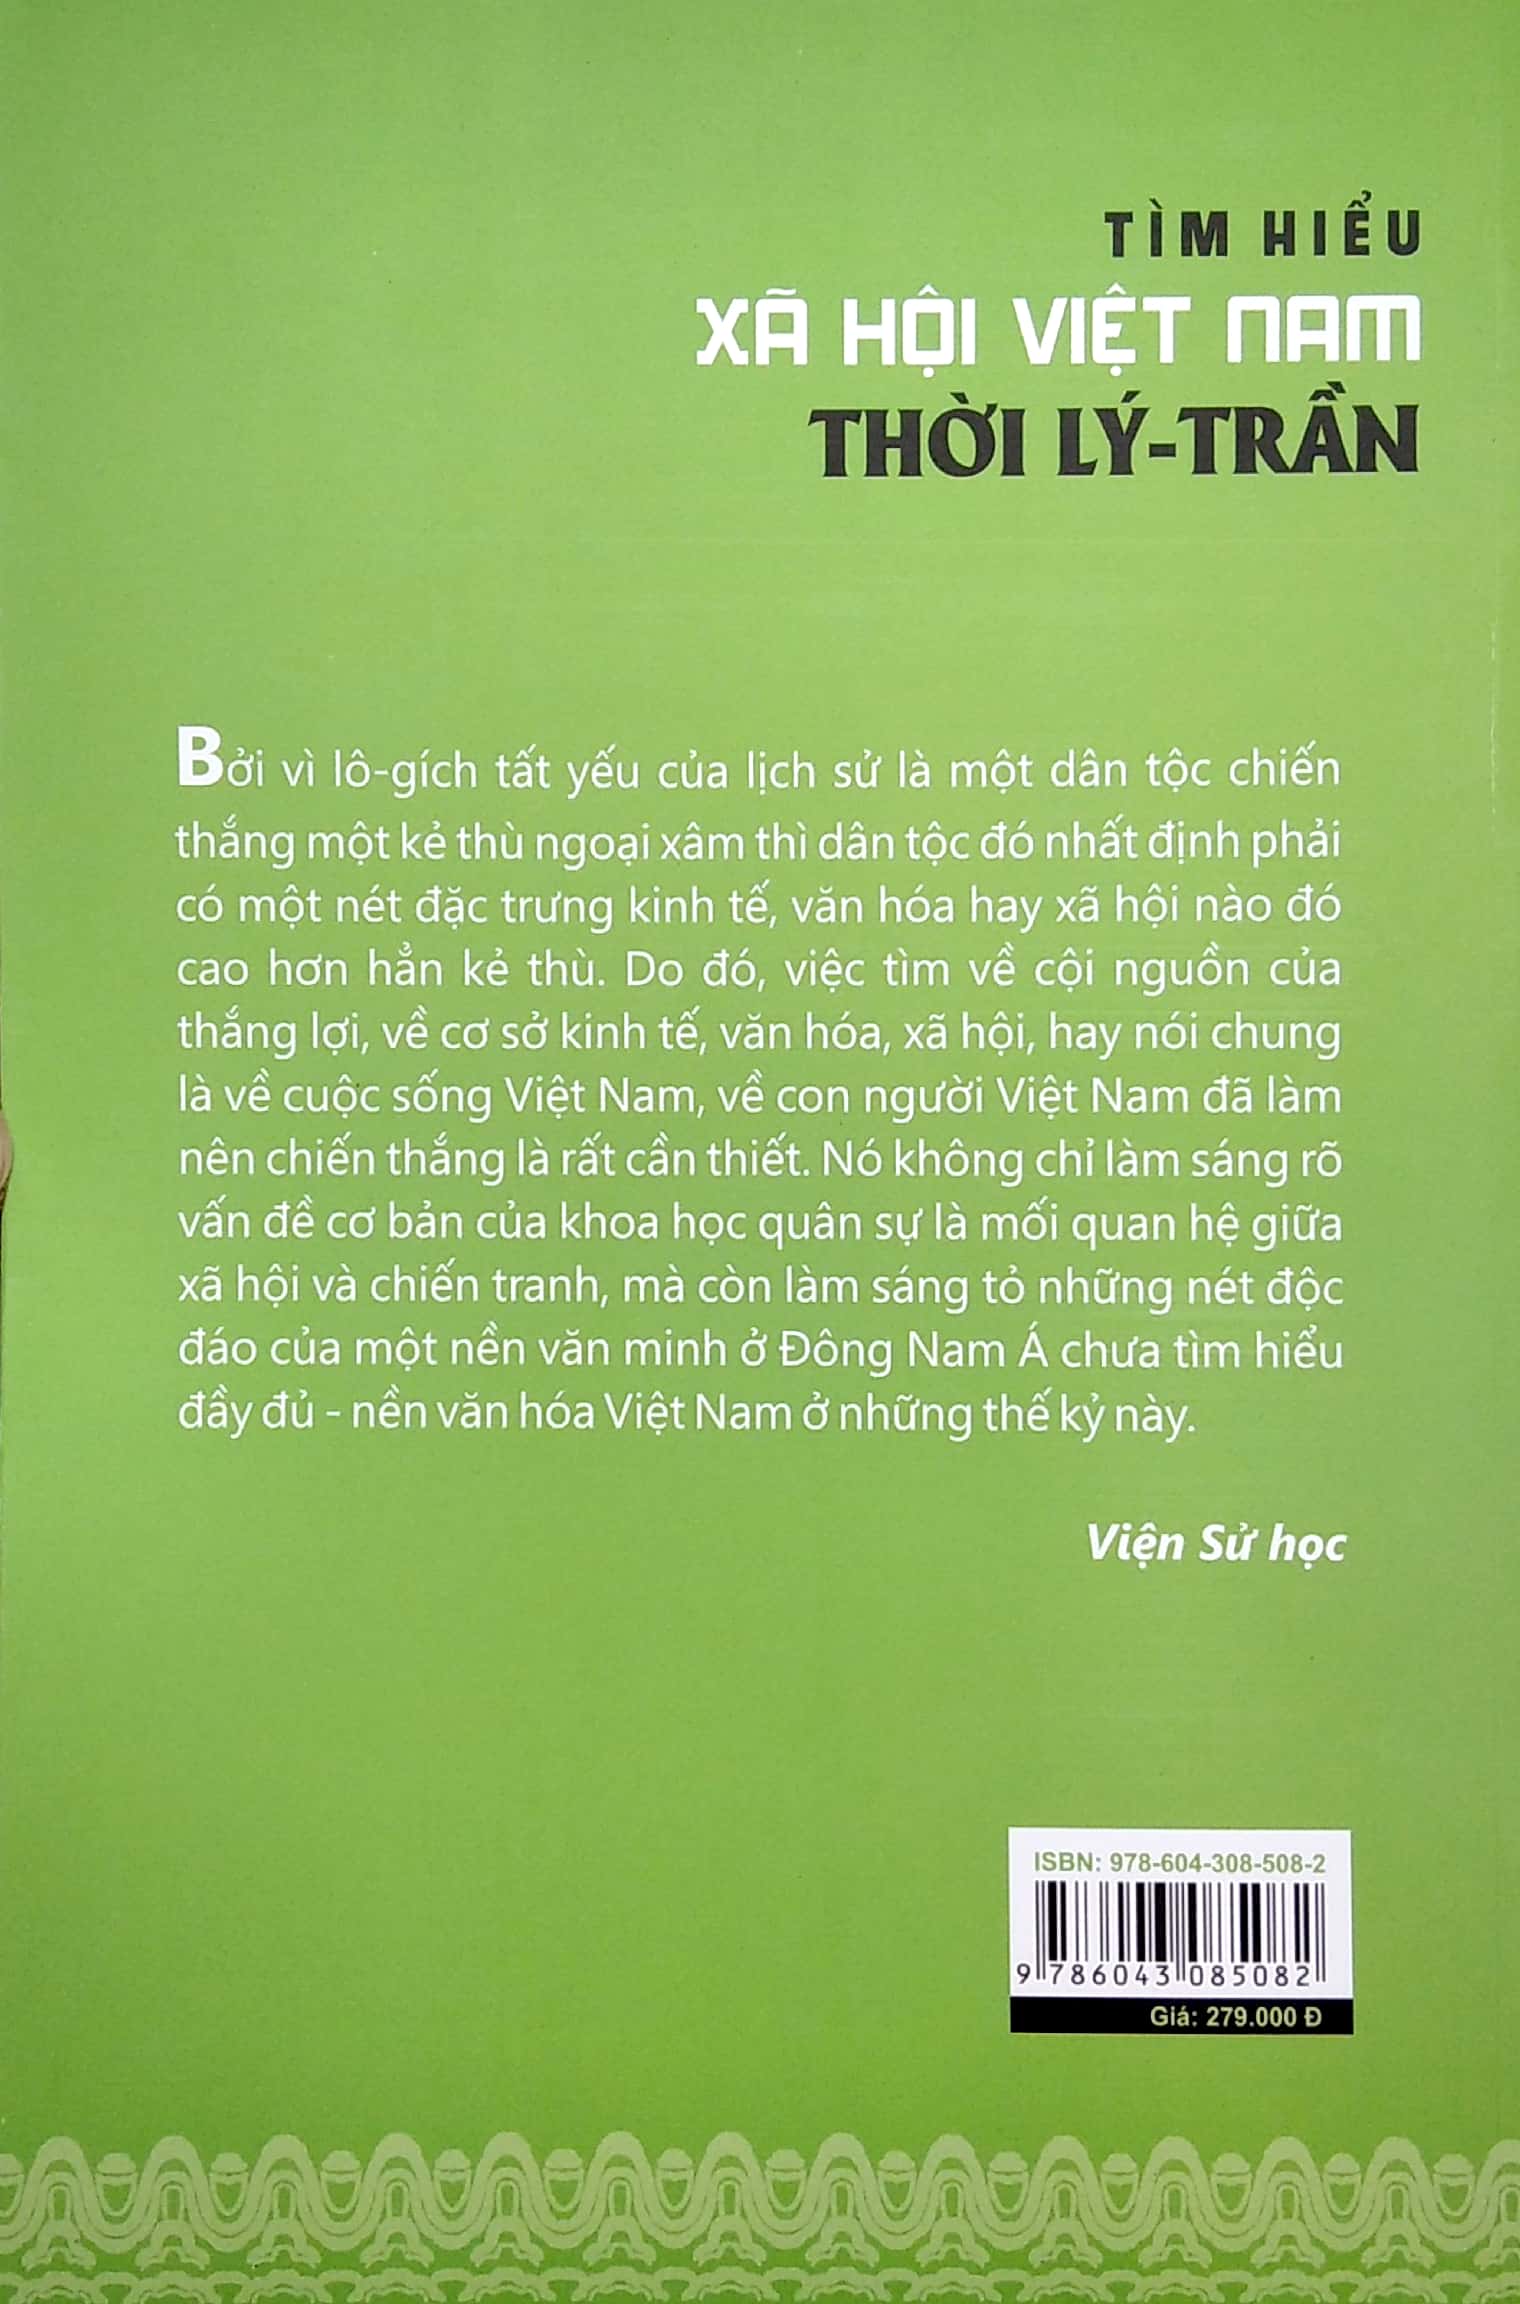 Tìm Hiểu Xã Hội Việt Nam Thời Lý - Trần PDF